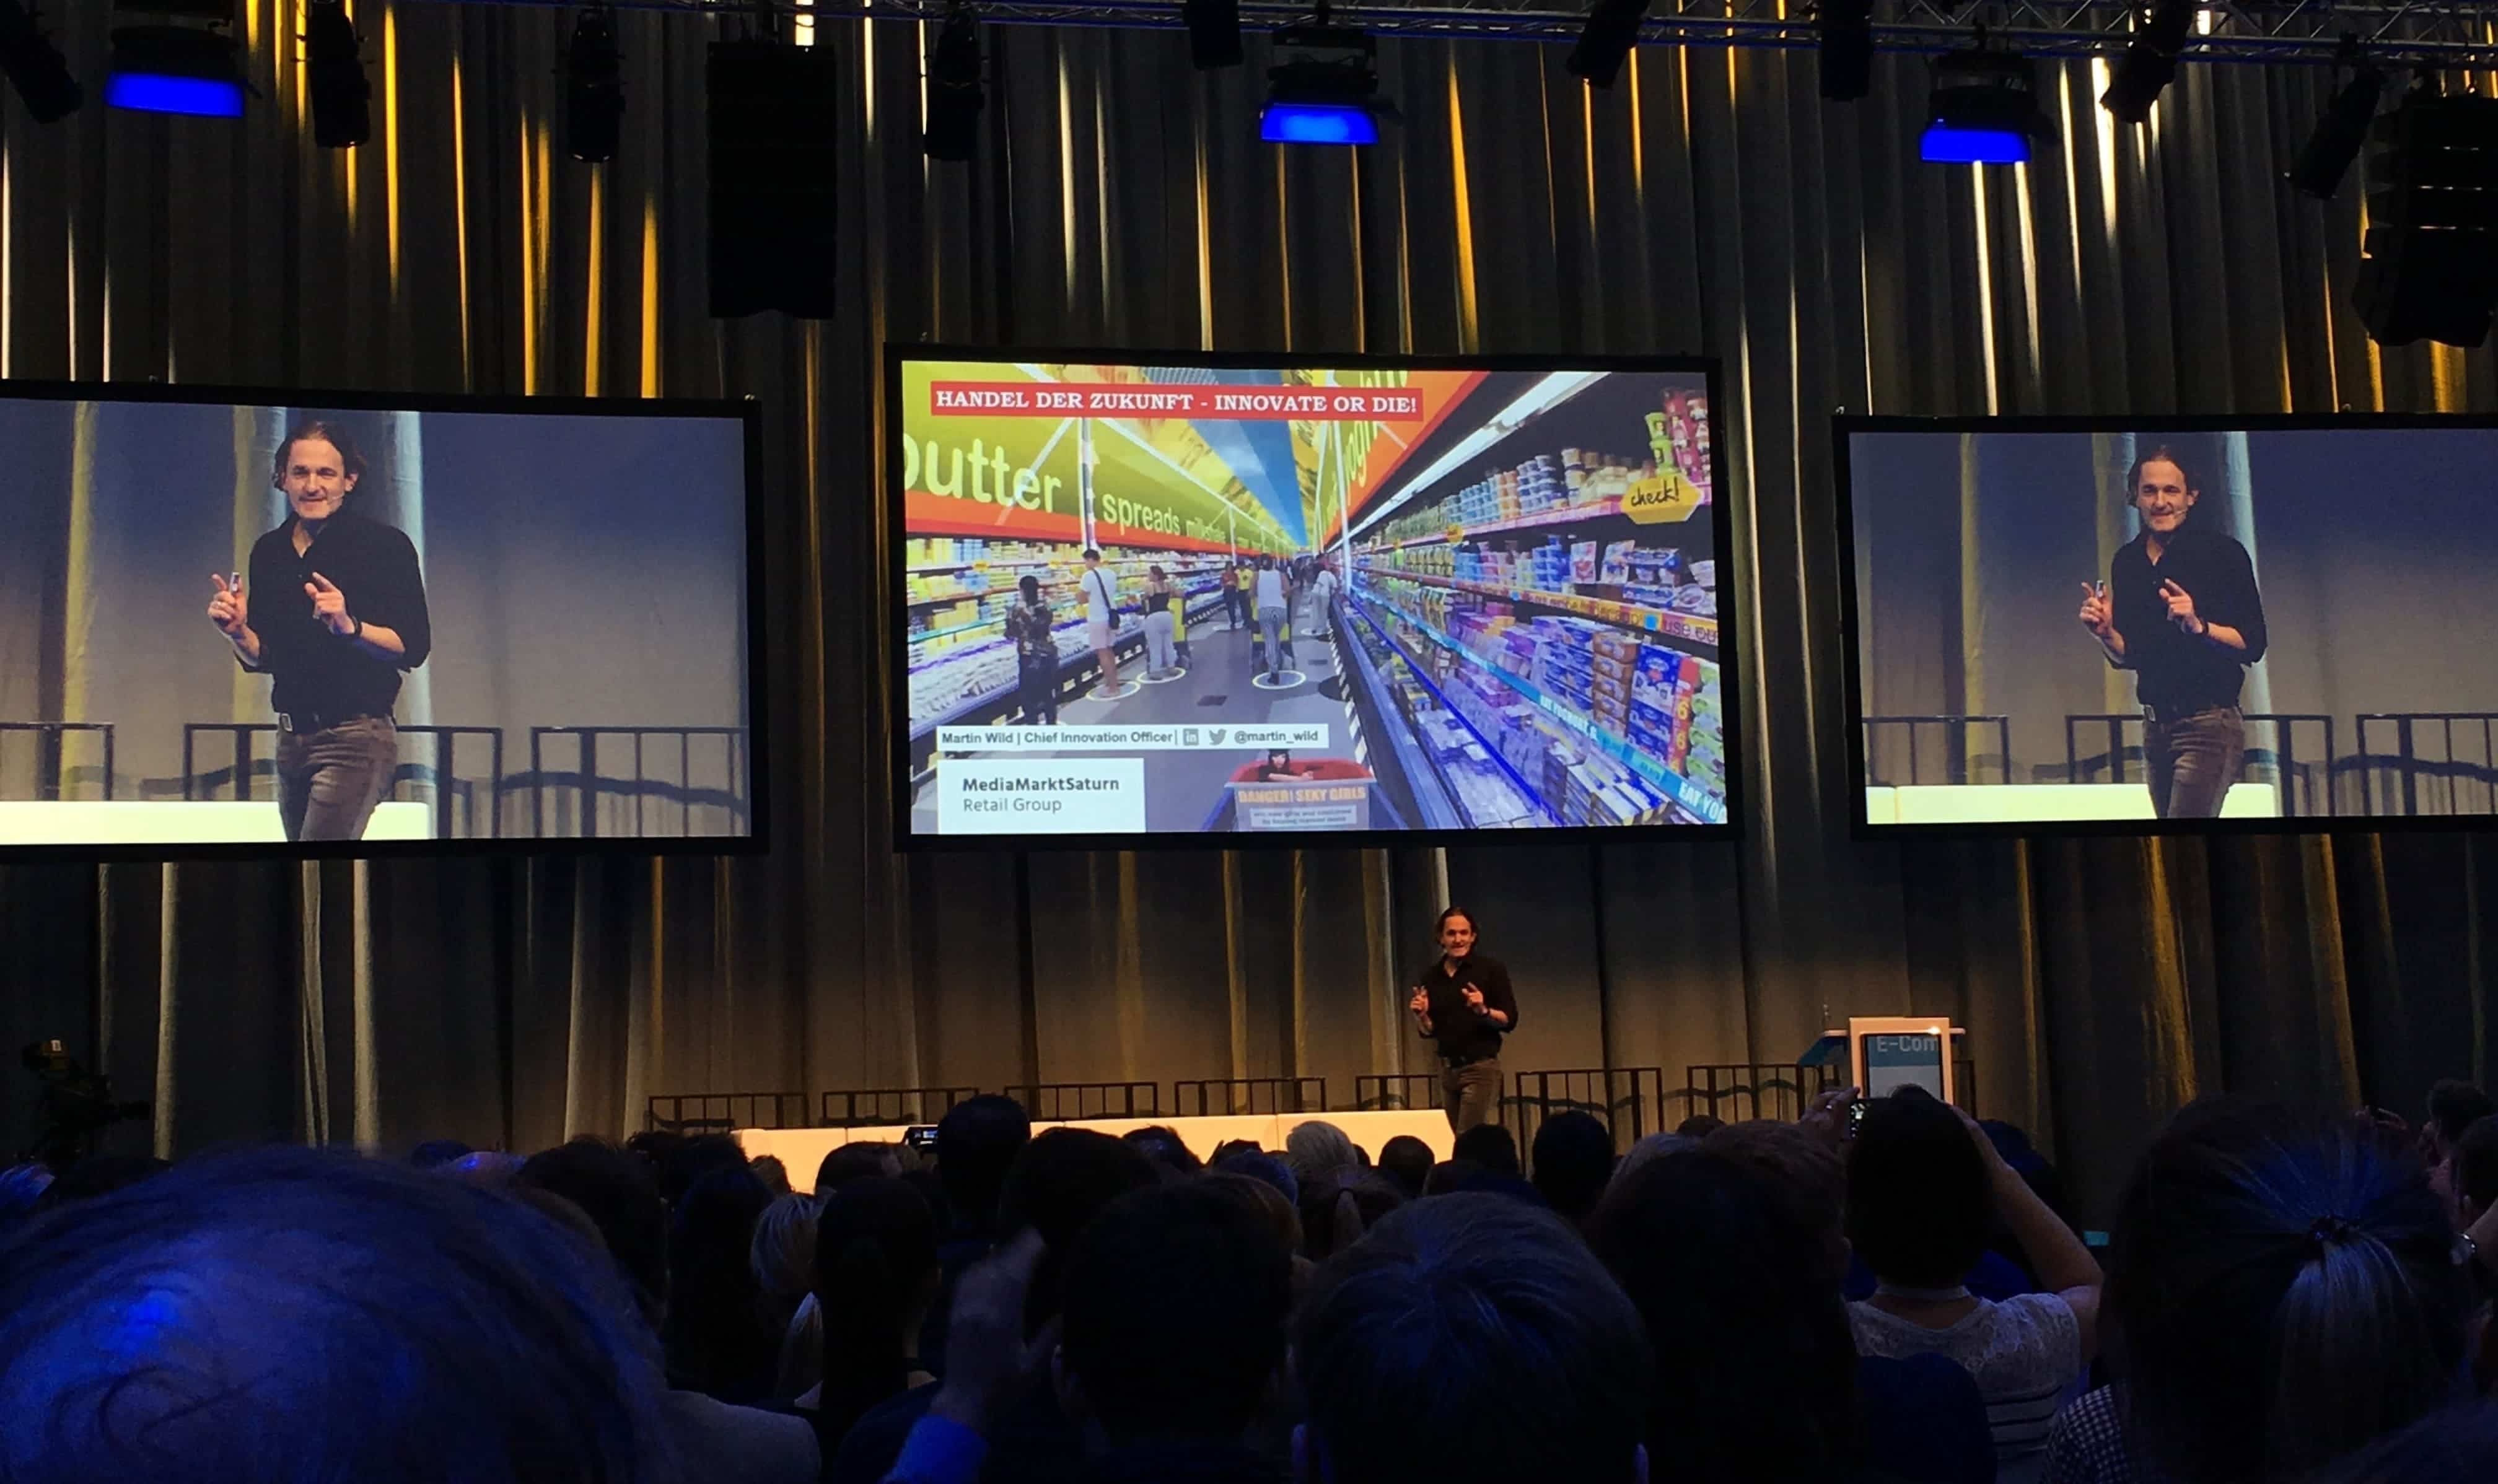 Martin Wilds Präsentation auf der Internet World Expo 2018 von der MediaMarktSaturn Retail Group zu 